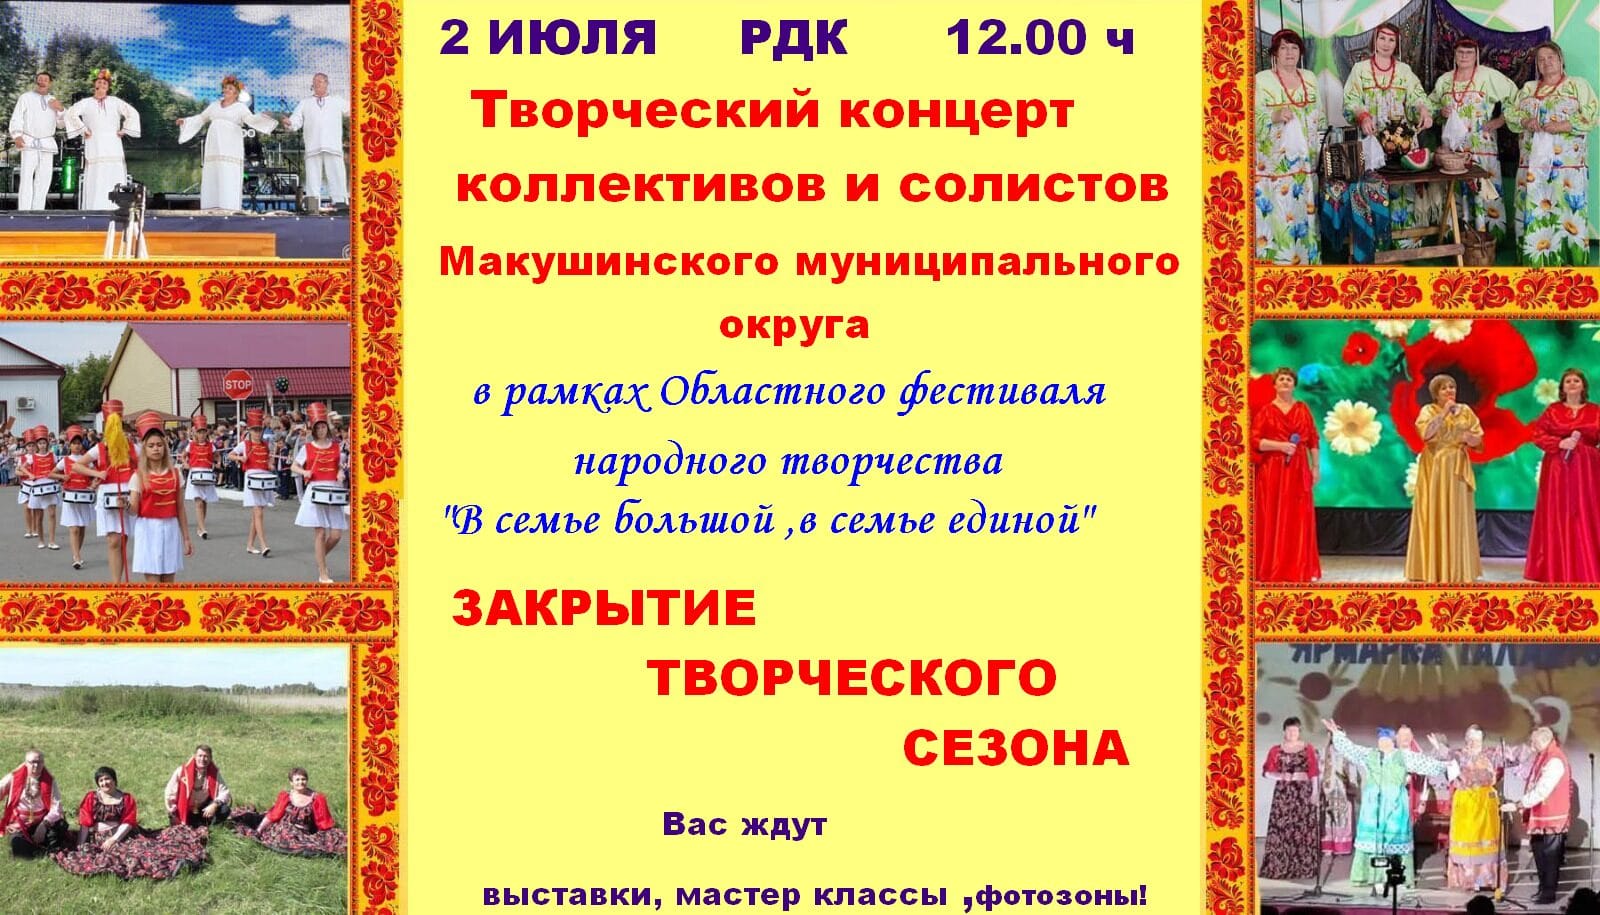 2 июля в 12.00 ч в РДК состоится Творческий концерт коллективов и солистов Макушинского муниципального округа.